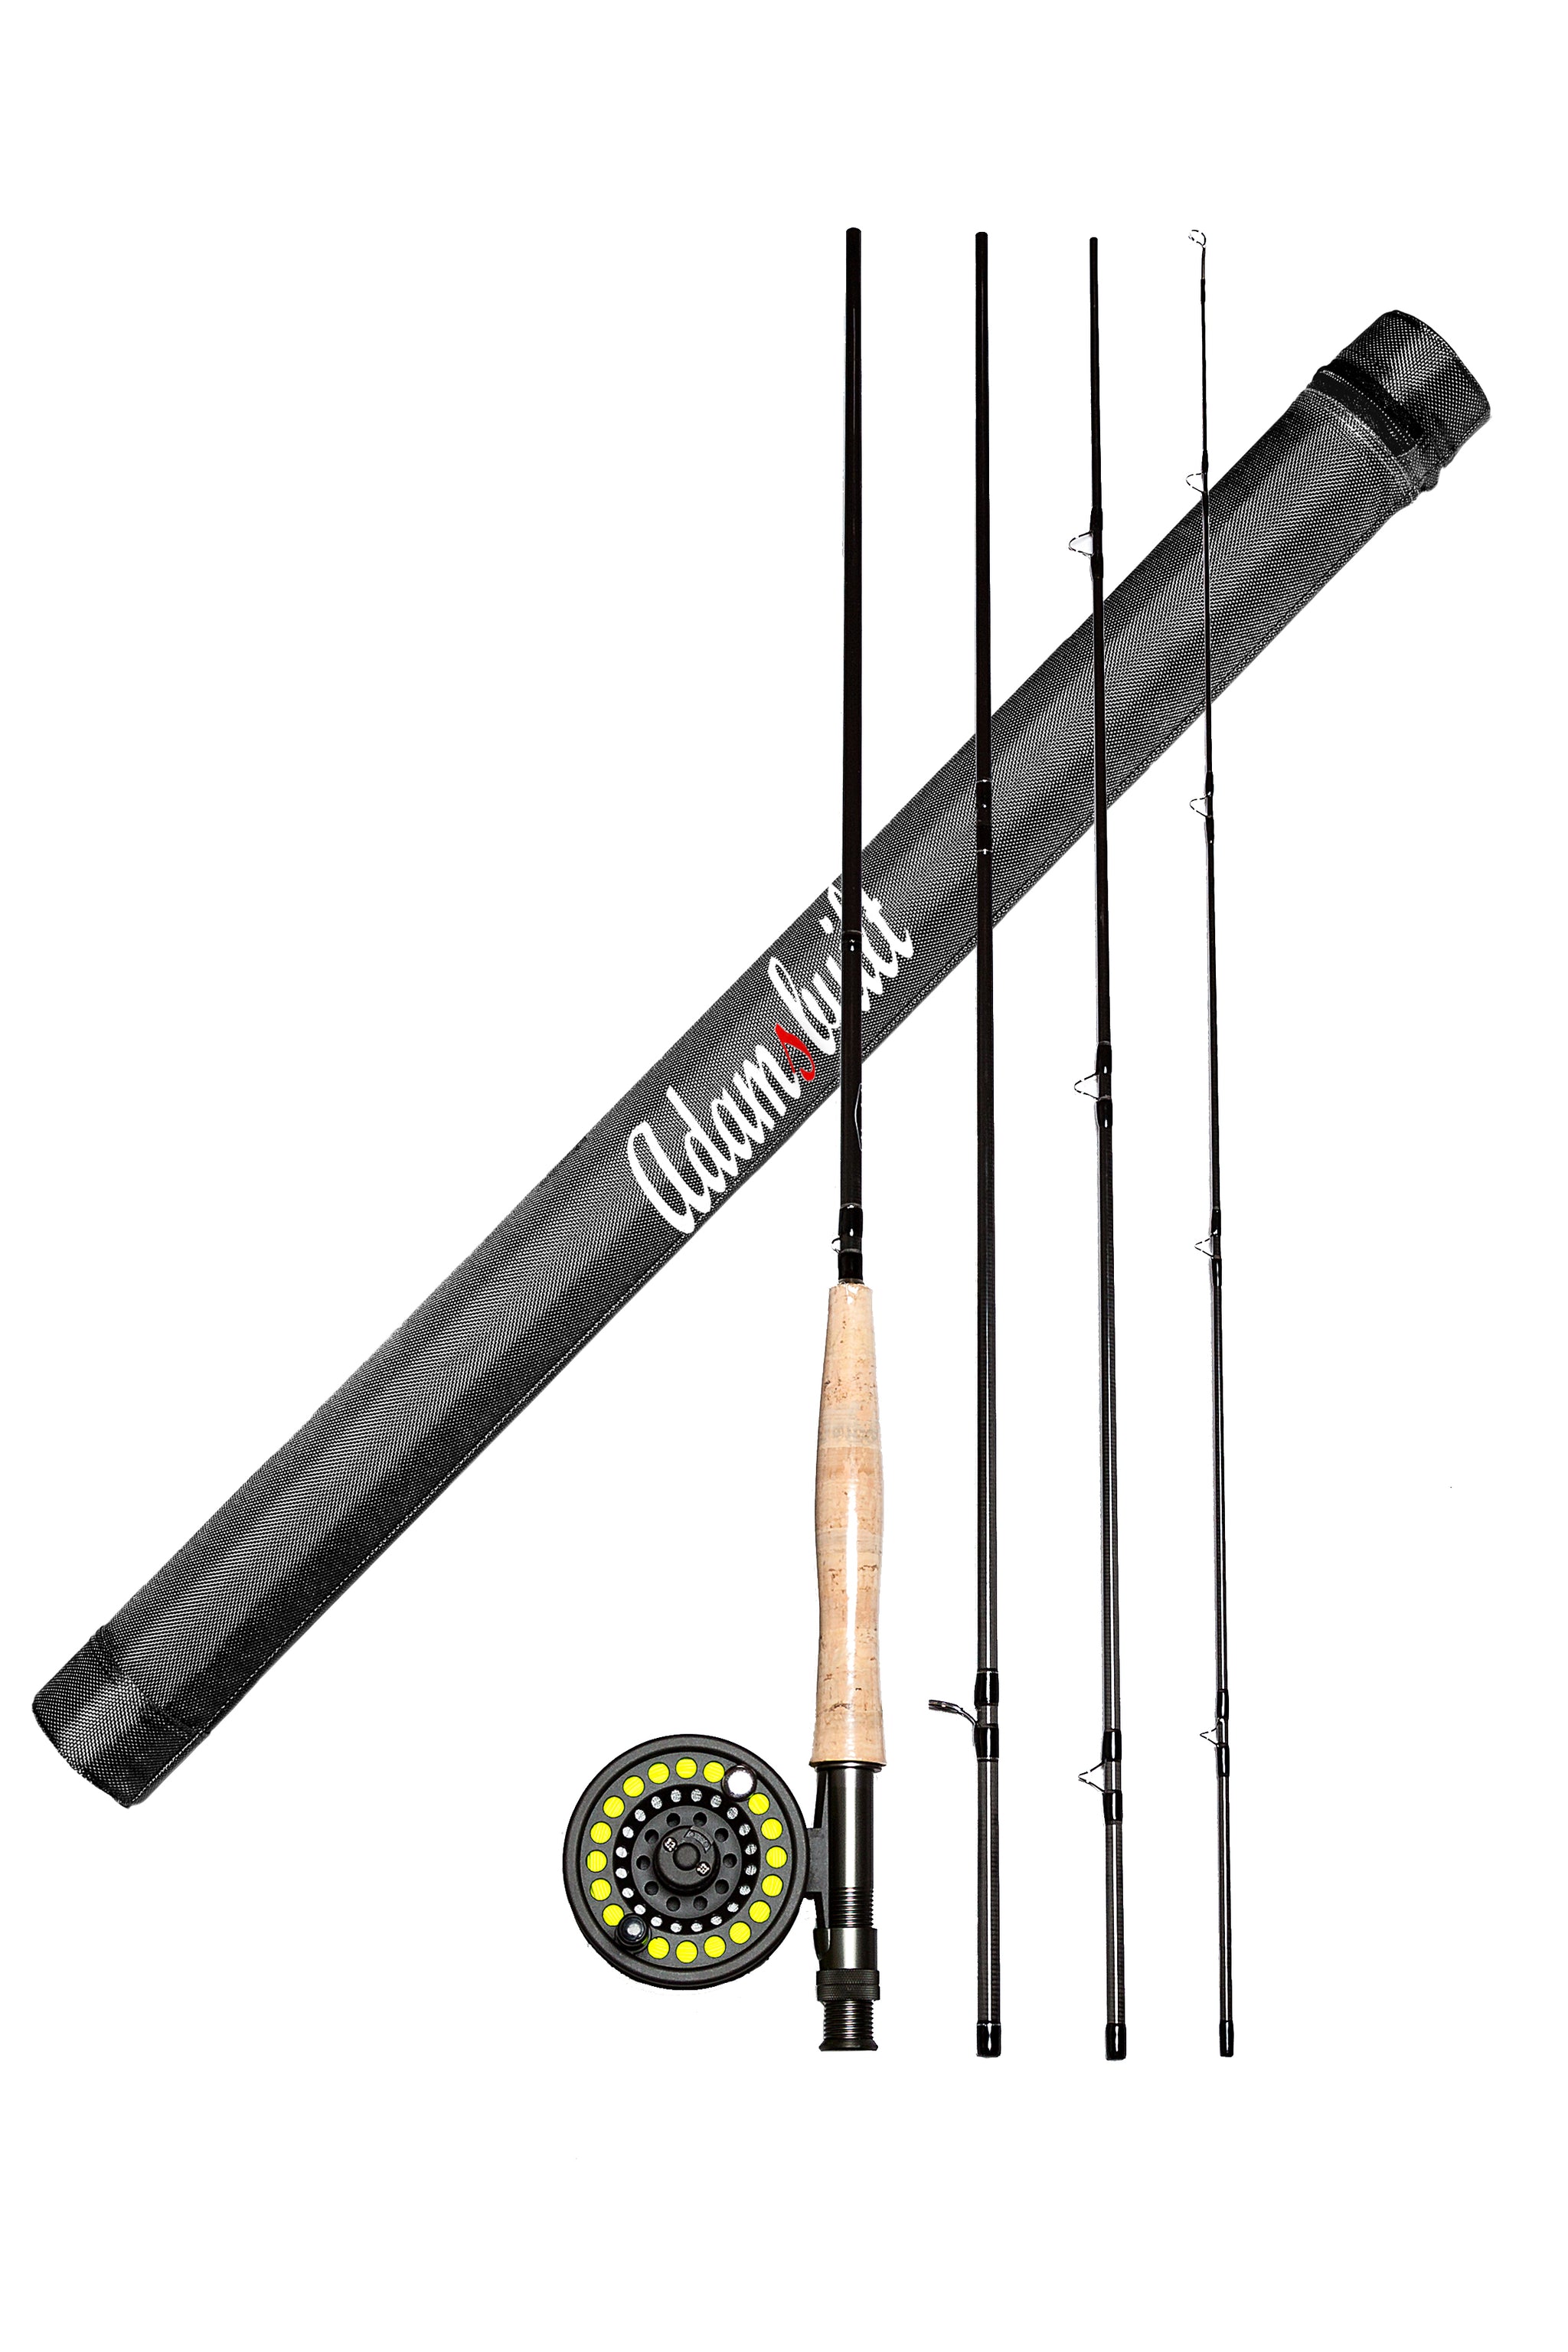 Aluminum Trout Net, 15 (RTN15) – Adamsbuilt Fishing